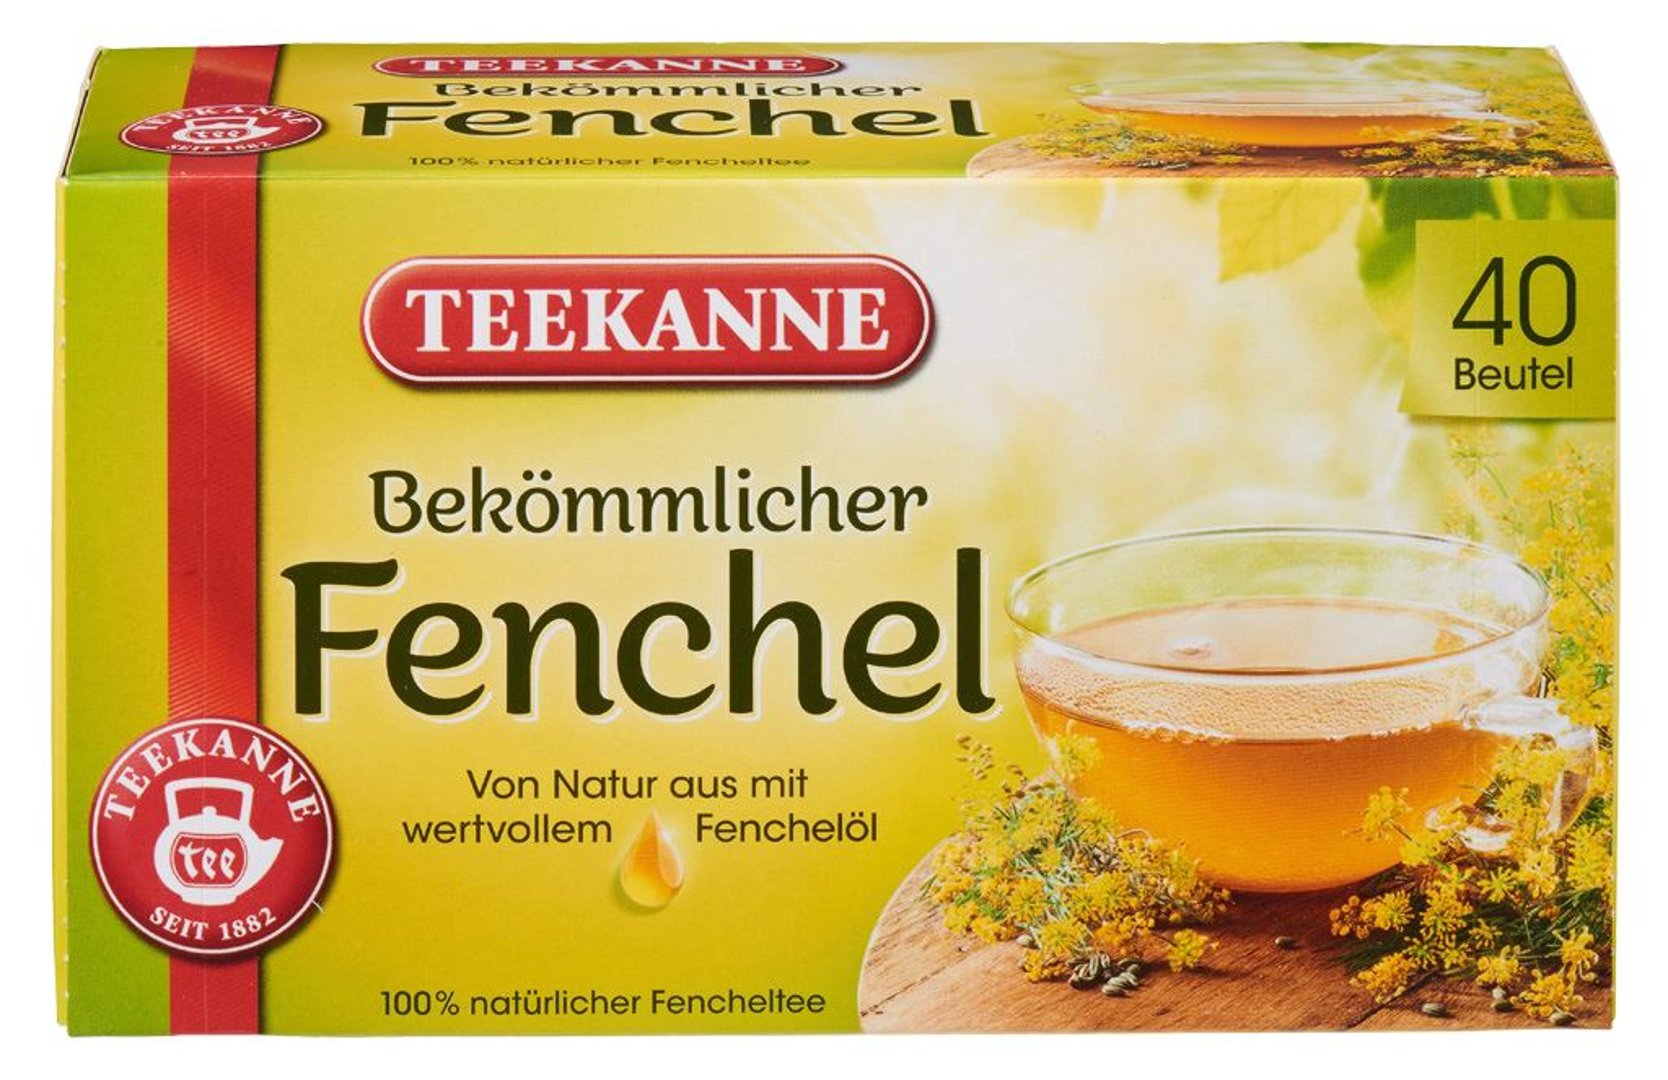 Teekanne - Fenchel wohltuend & aromatisch, 40 Beutel 120 g Packung